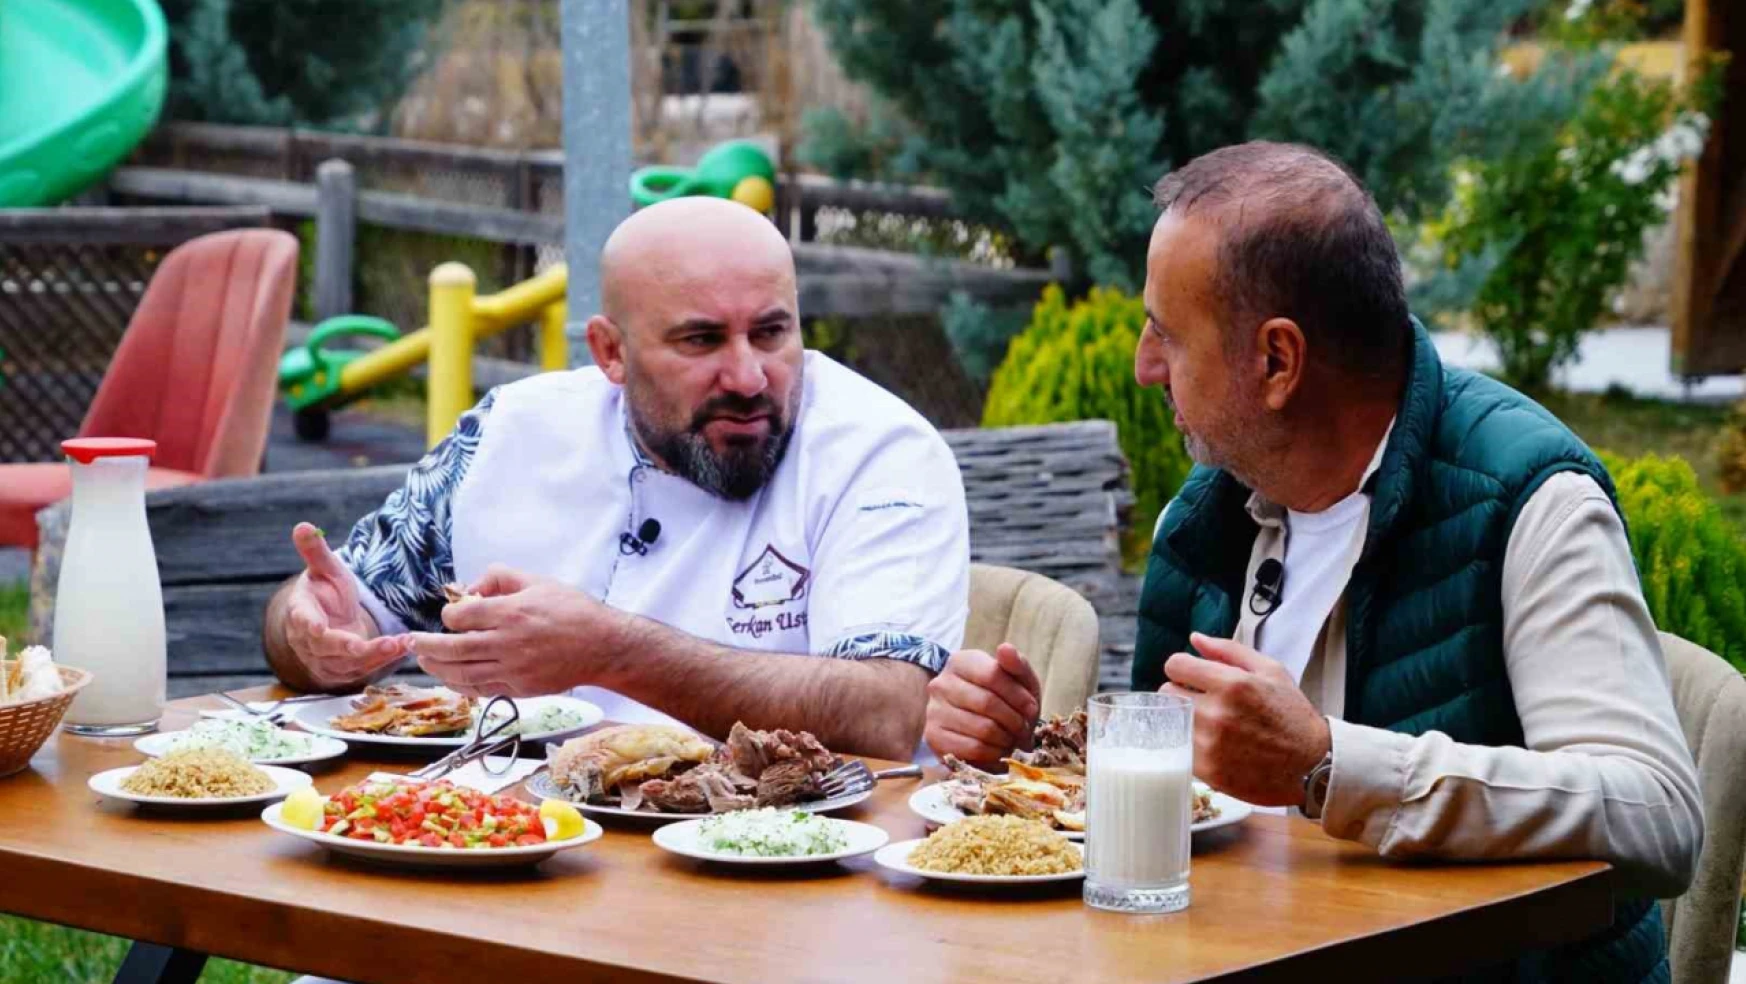 Coğrafi işaretli lezzet Kastamonu Kuyu Kebabı tüm Türkiye'ye tanıtılacak